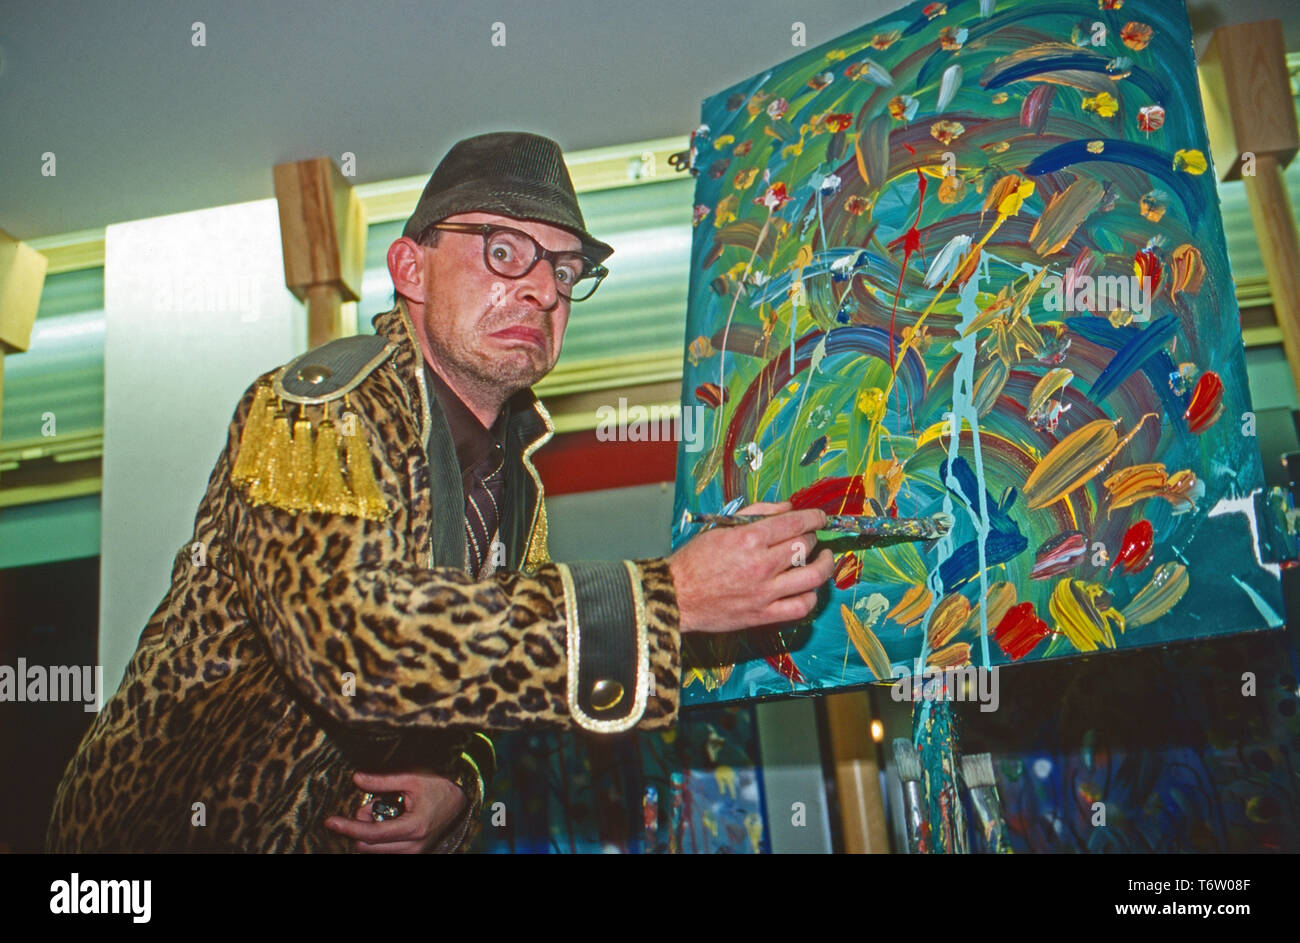 Alexander Bisenz, österreichischer Kabarettist und Maler, Deutschland ca. 1996. Austrian cabaret artist and painter Alexander Bisenz, Germany ca. 1996. Stock Photo